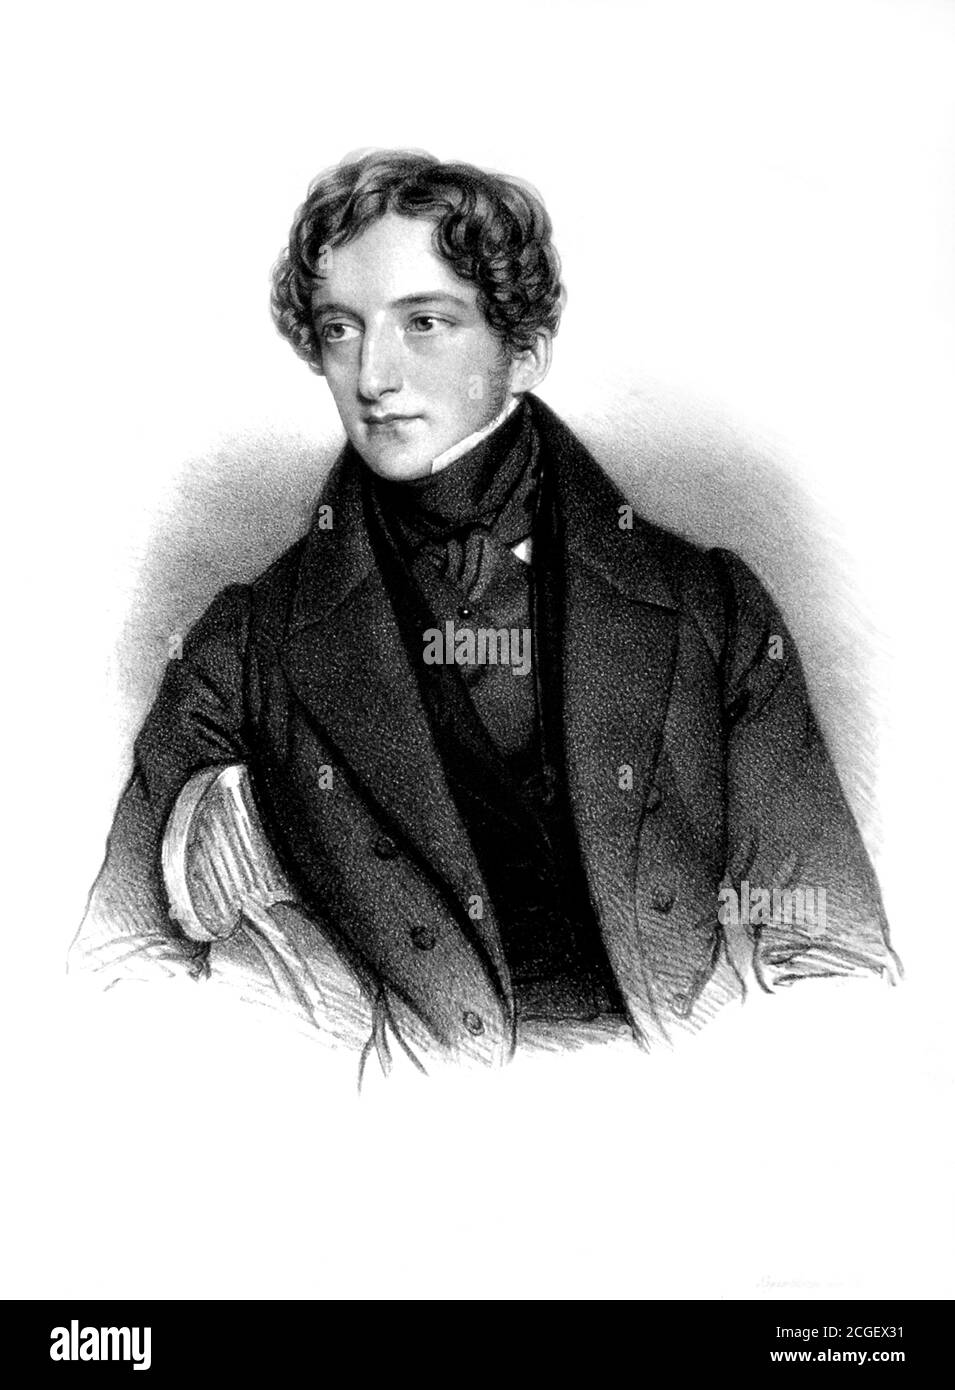 1830 c, AUSTRIA: El pianista y compositor austriaco SIGISMUND THALBERG ( Sigismund Fortuné François Thalberg , 1812 - 1871 ). Retrato grabado por Andreas Staub ( 1806 – 1839 ). - PIANISTA - PIANO - PIANOFORTE - COMPOSITORE - OPERA - MÚSICA CLÁSICA - Retrato - ritratto - OPERÁTICO - OPERA LIRICA - clásica - cuello - colletto --- Archivio GBB Foto de stock